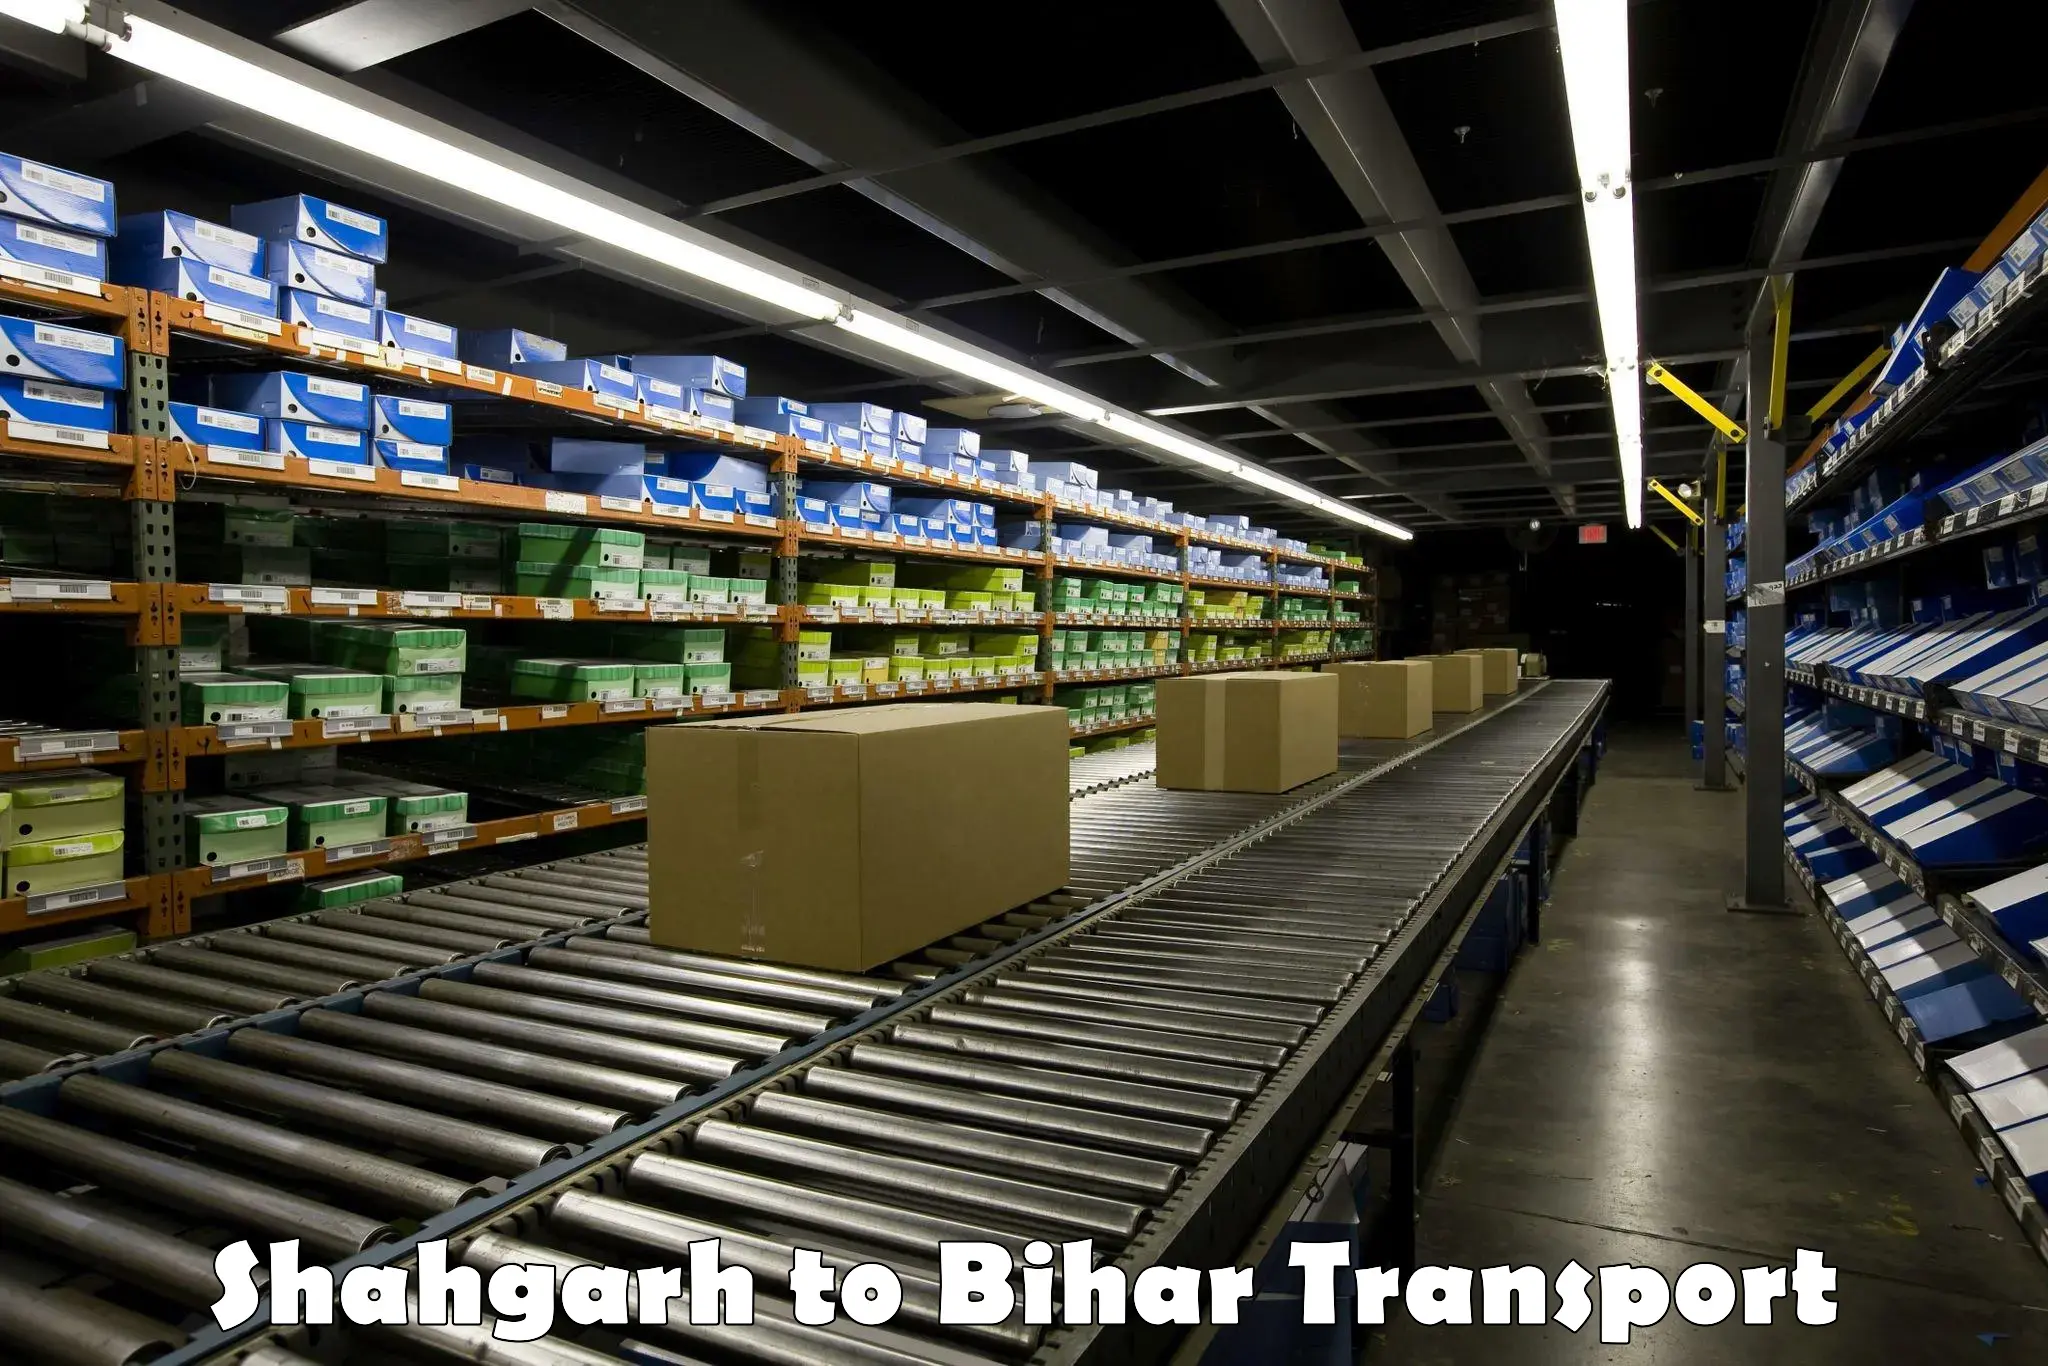 Online transport Shahgarh to Bhagalpur